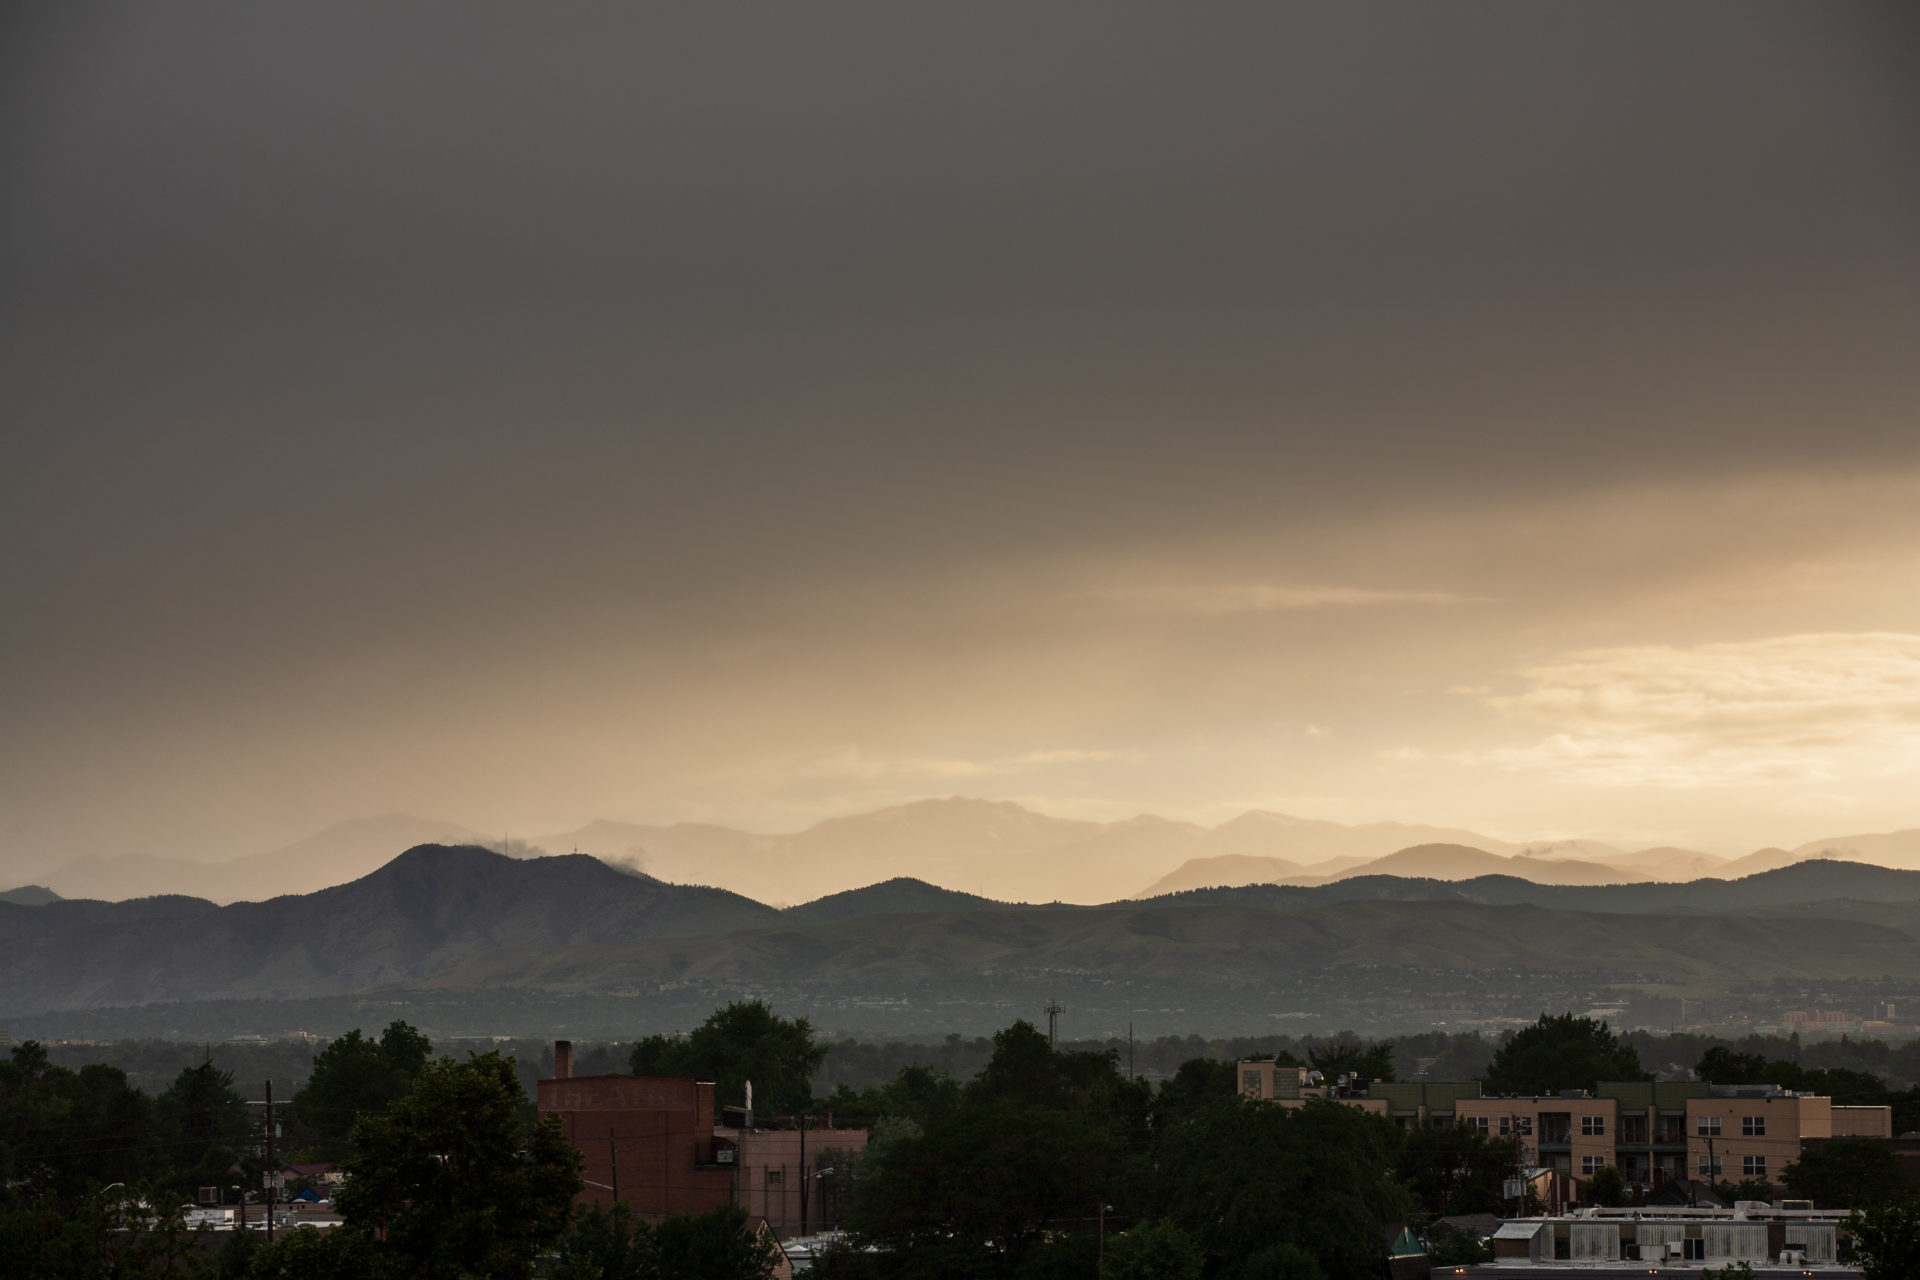 Mount Evans sunset - July 11, 2011